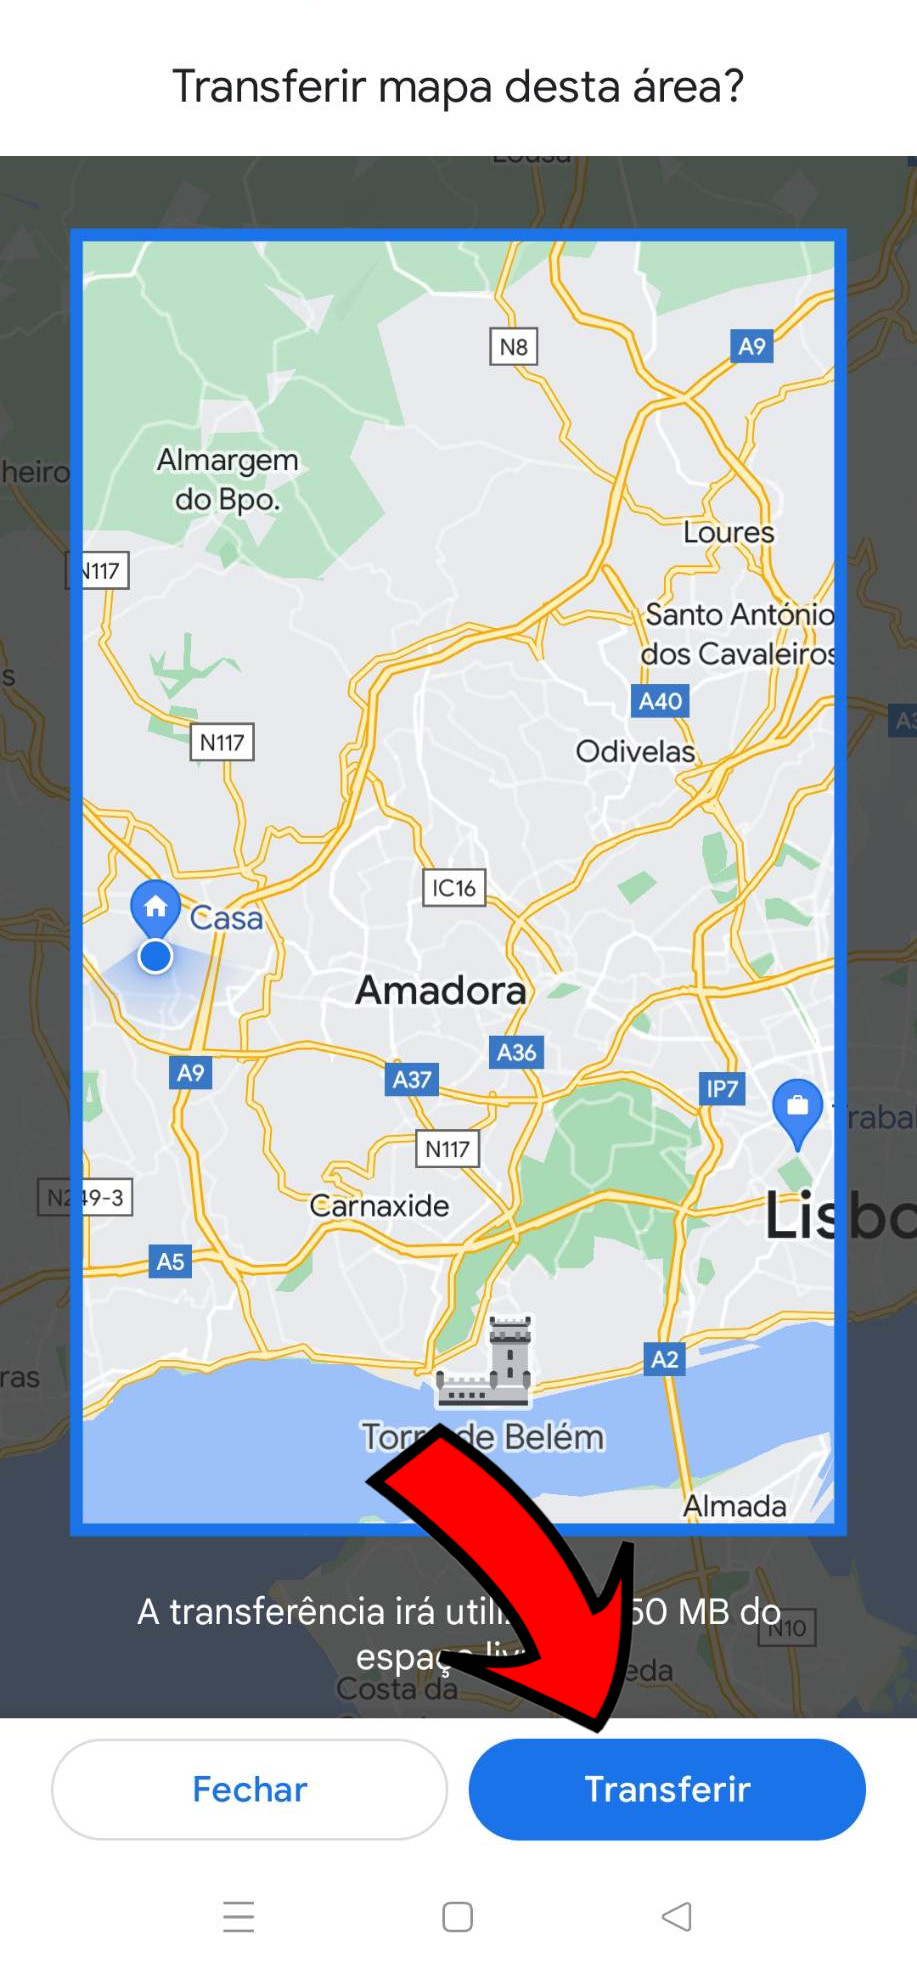 Passo a passo de como usar o Google Maps sem internet. #mapas